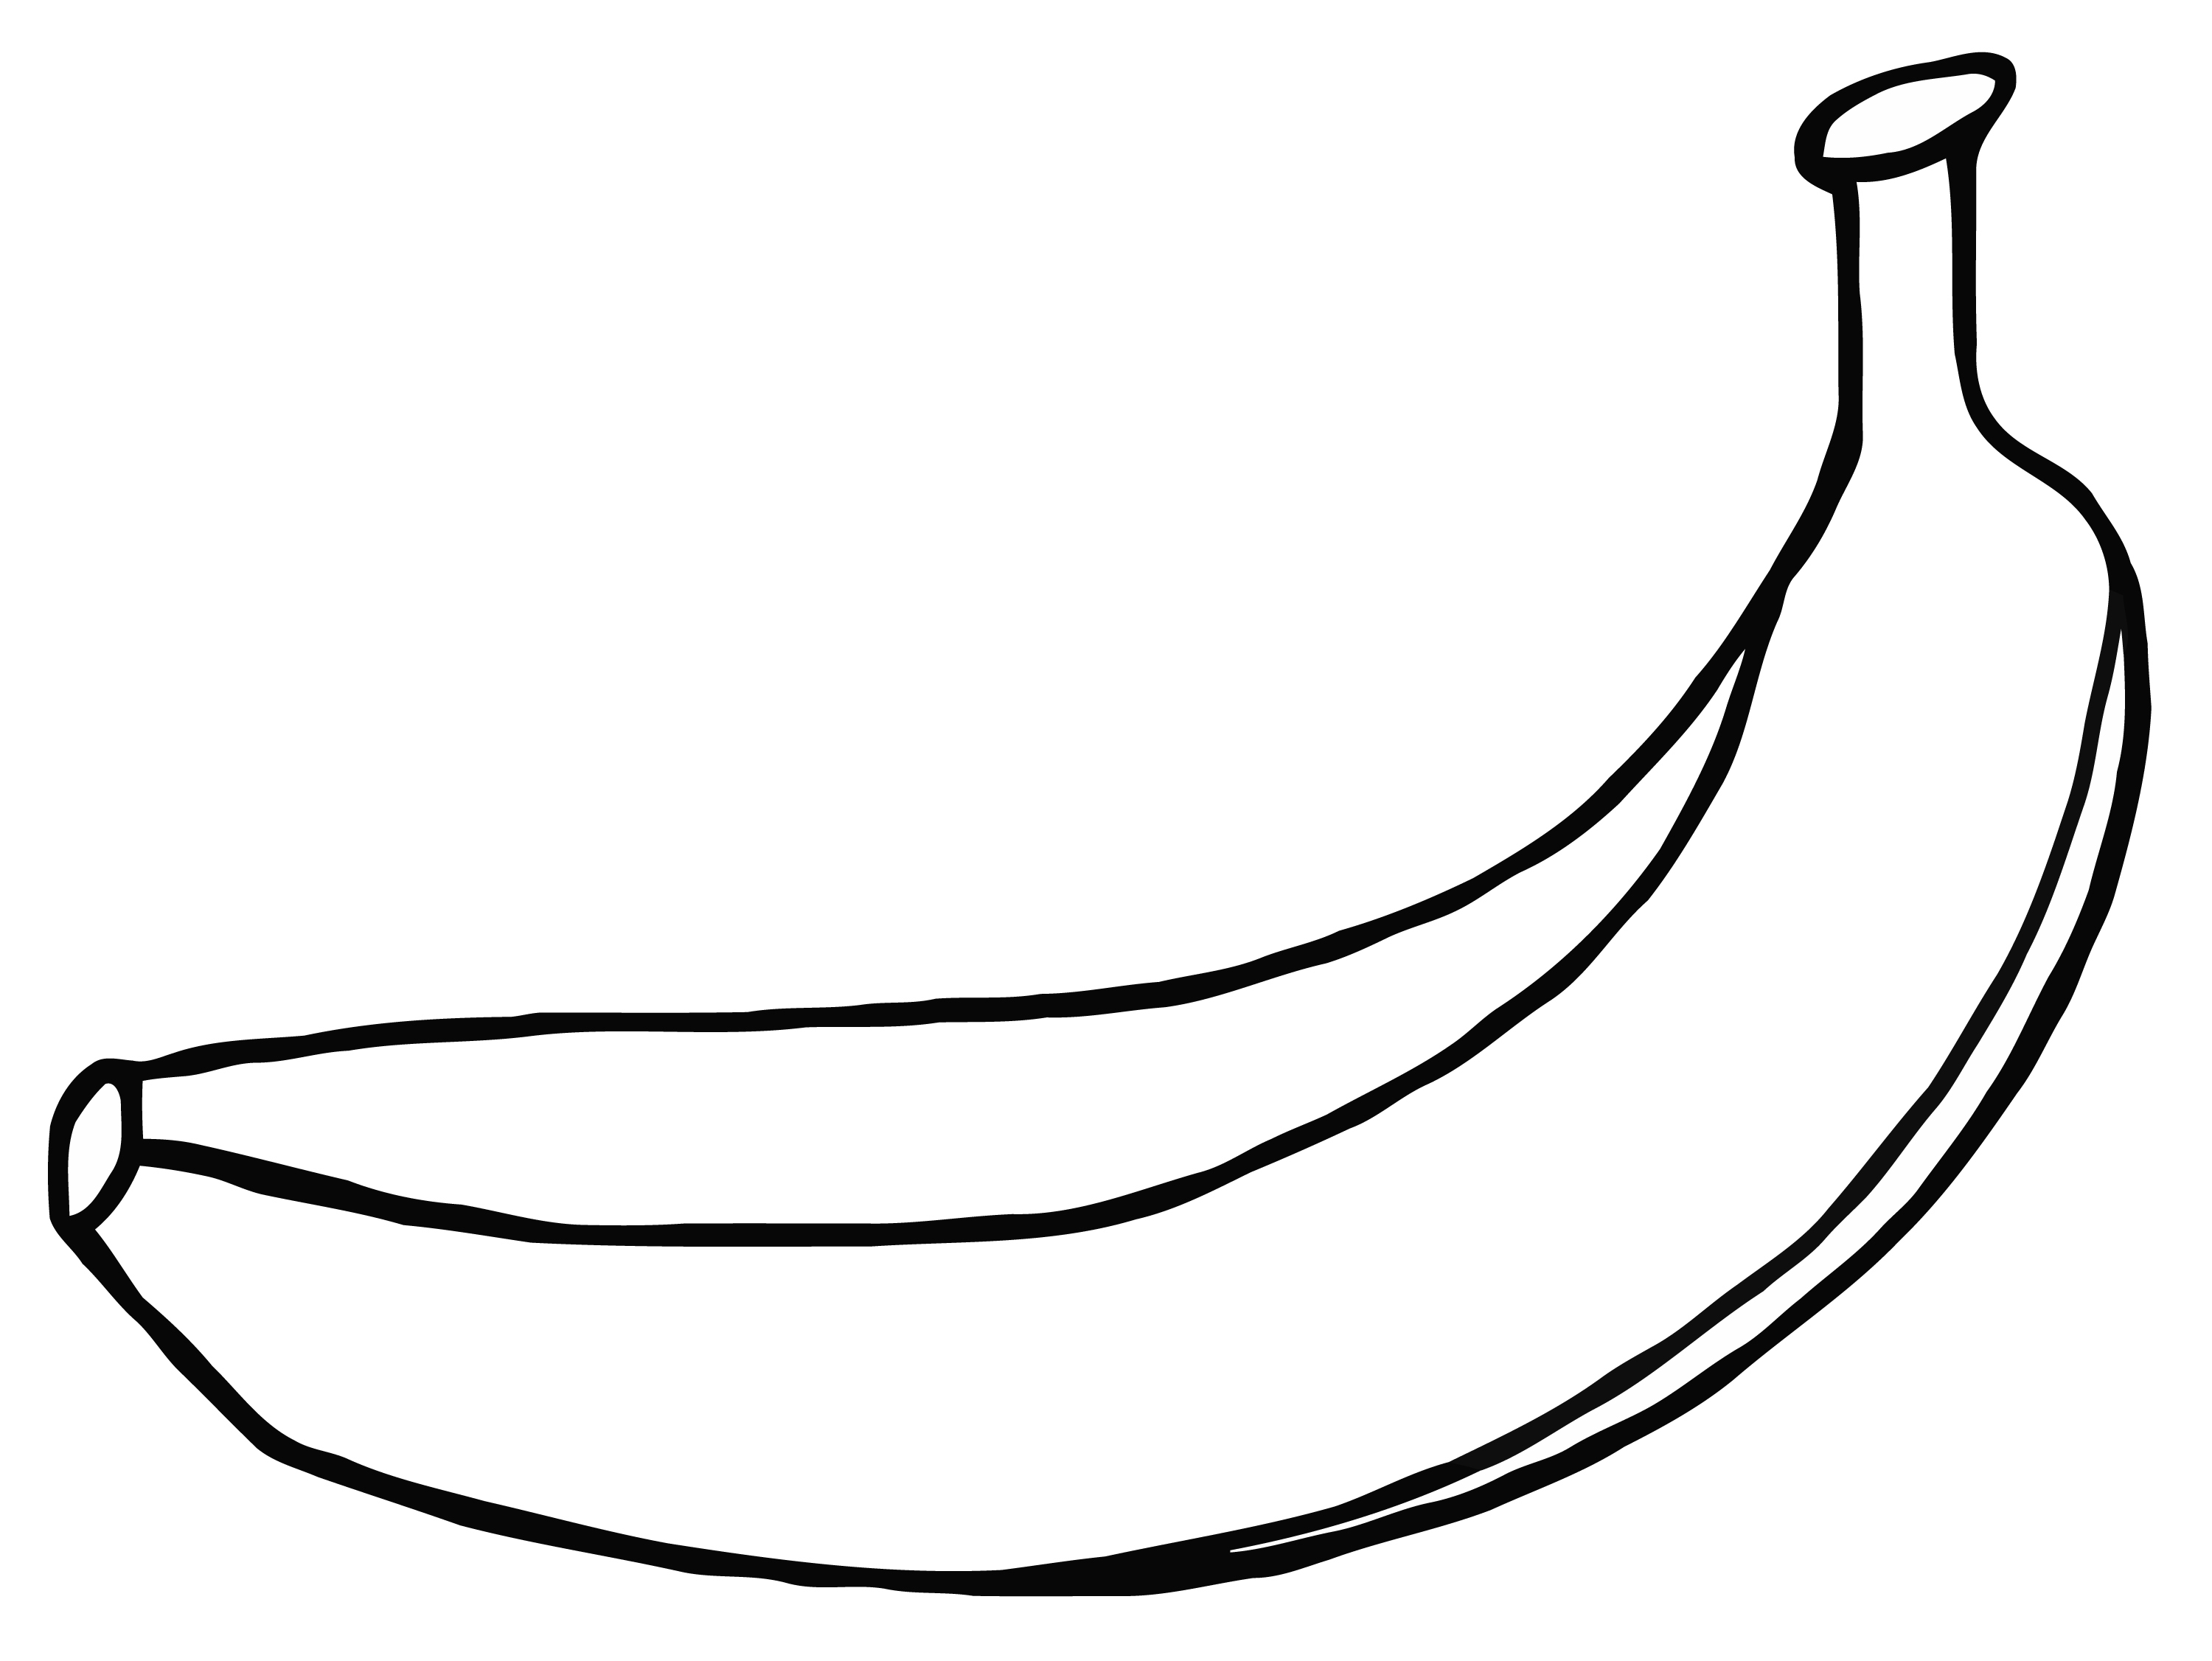 banana clipart drawing